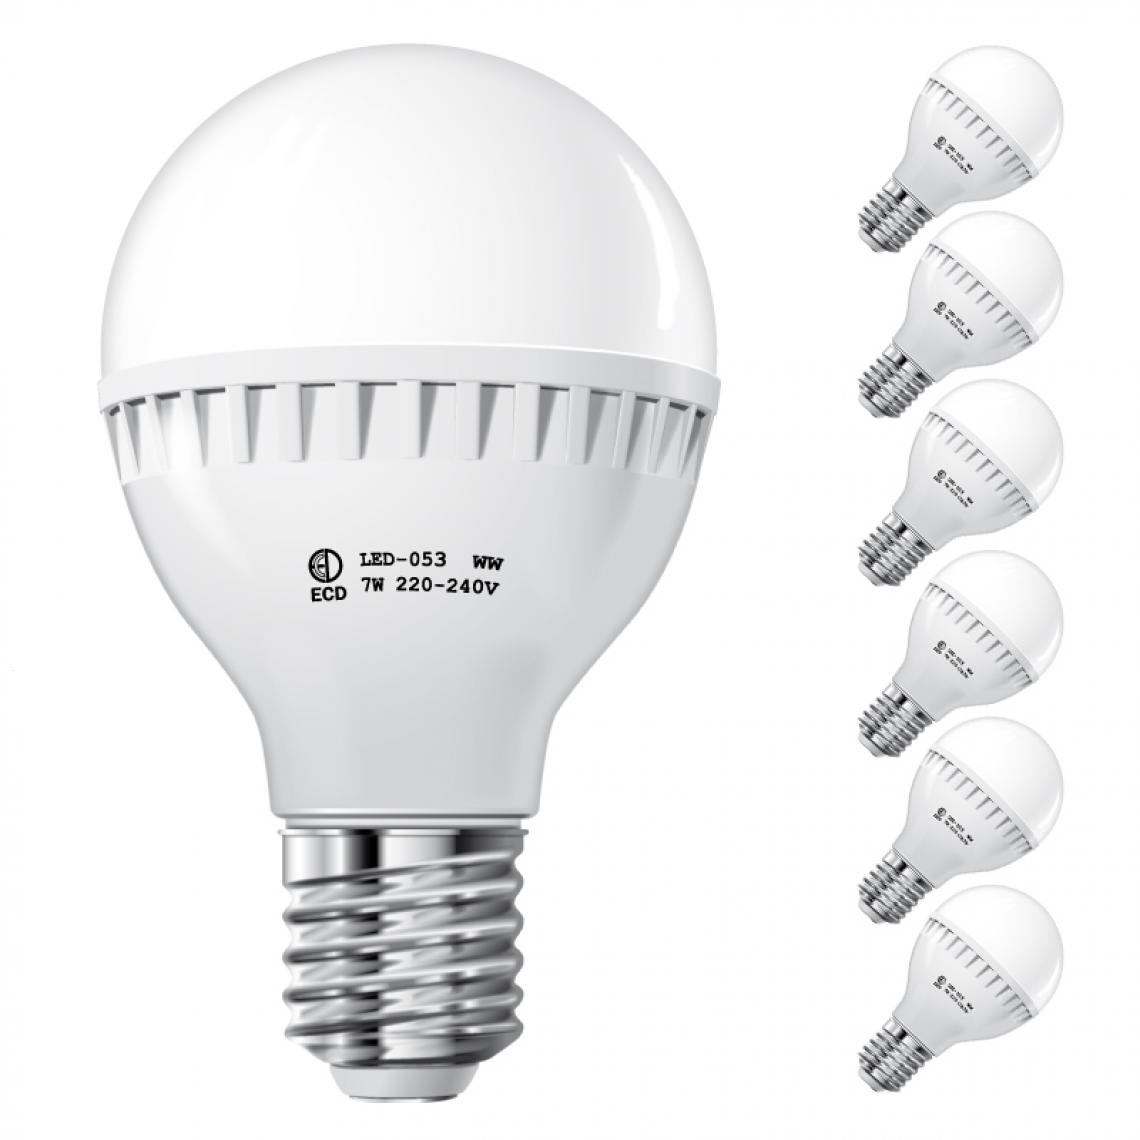 Ecd Germany - ECD Germany 6 x 7W E27 LED Lampe | 6000 Kelvin Blanc Froid | 458 Lumens | 220-240 V | Remplace une Ampoule Halogène de 45 W | Ampoules à Économie d'Énergie - Ampoules LED